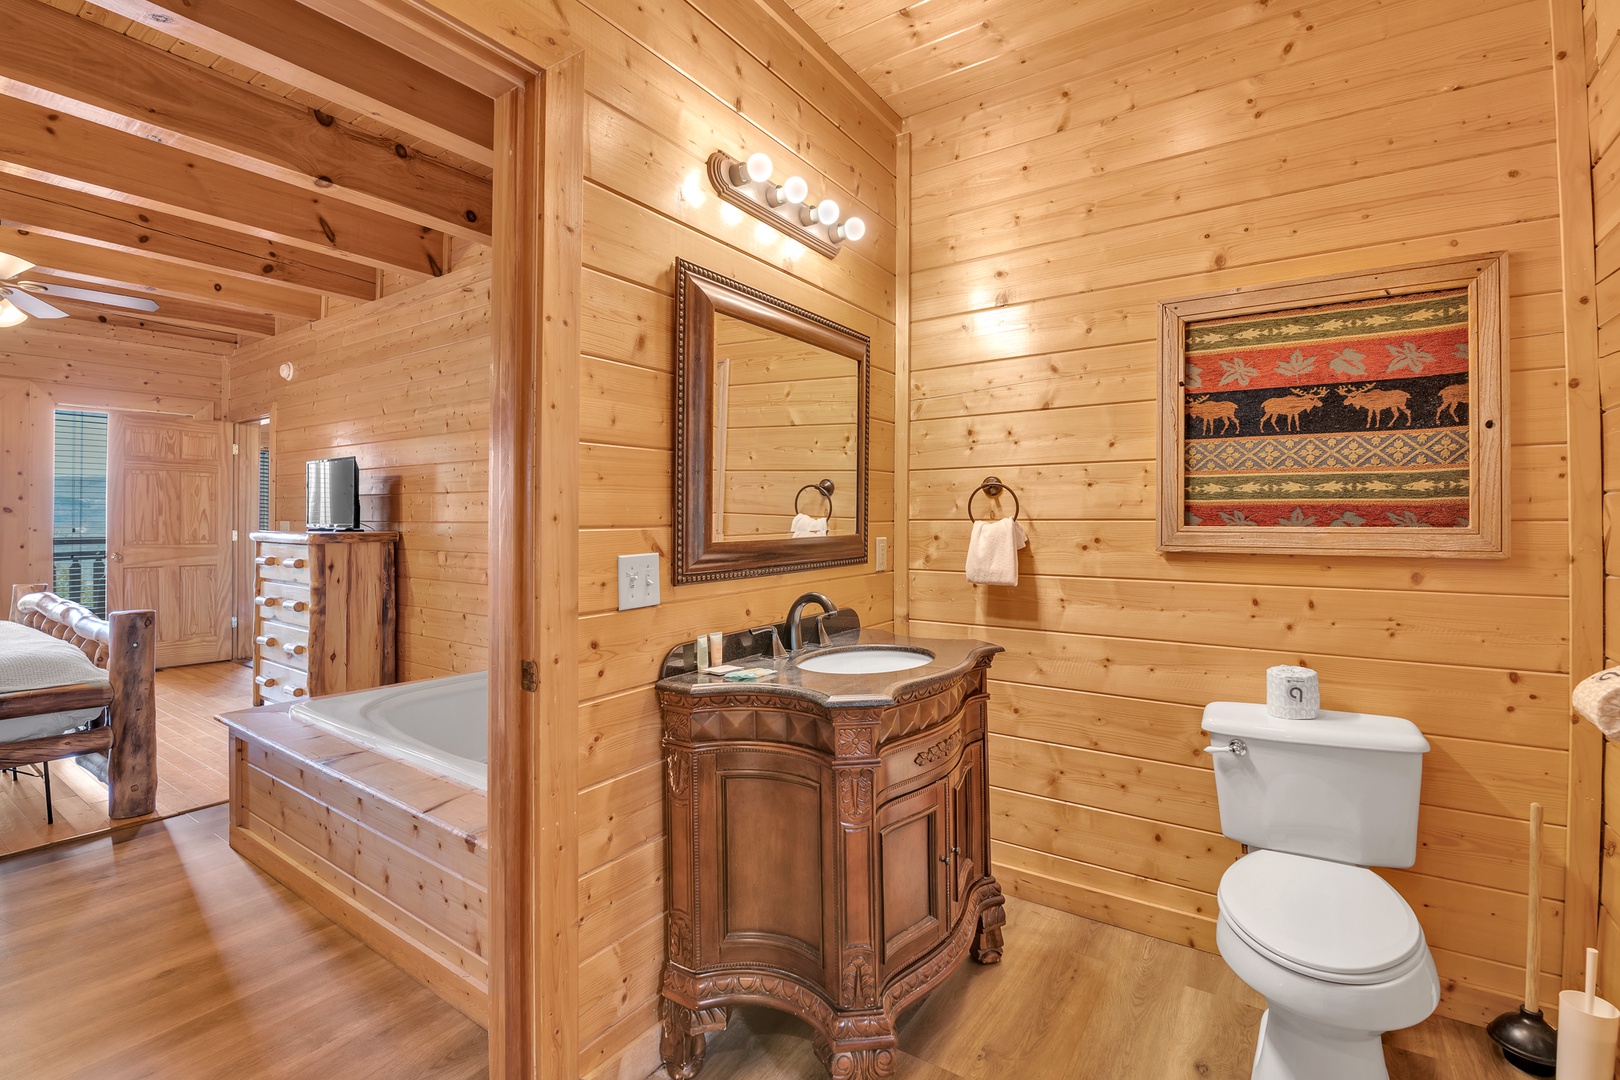 This full en suite bathroom includes a single vanity & walk-in shower